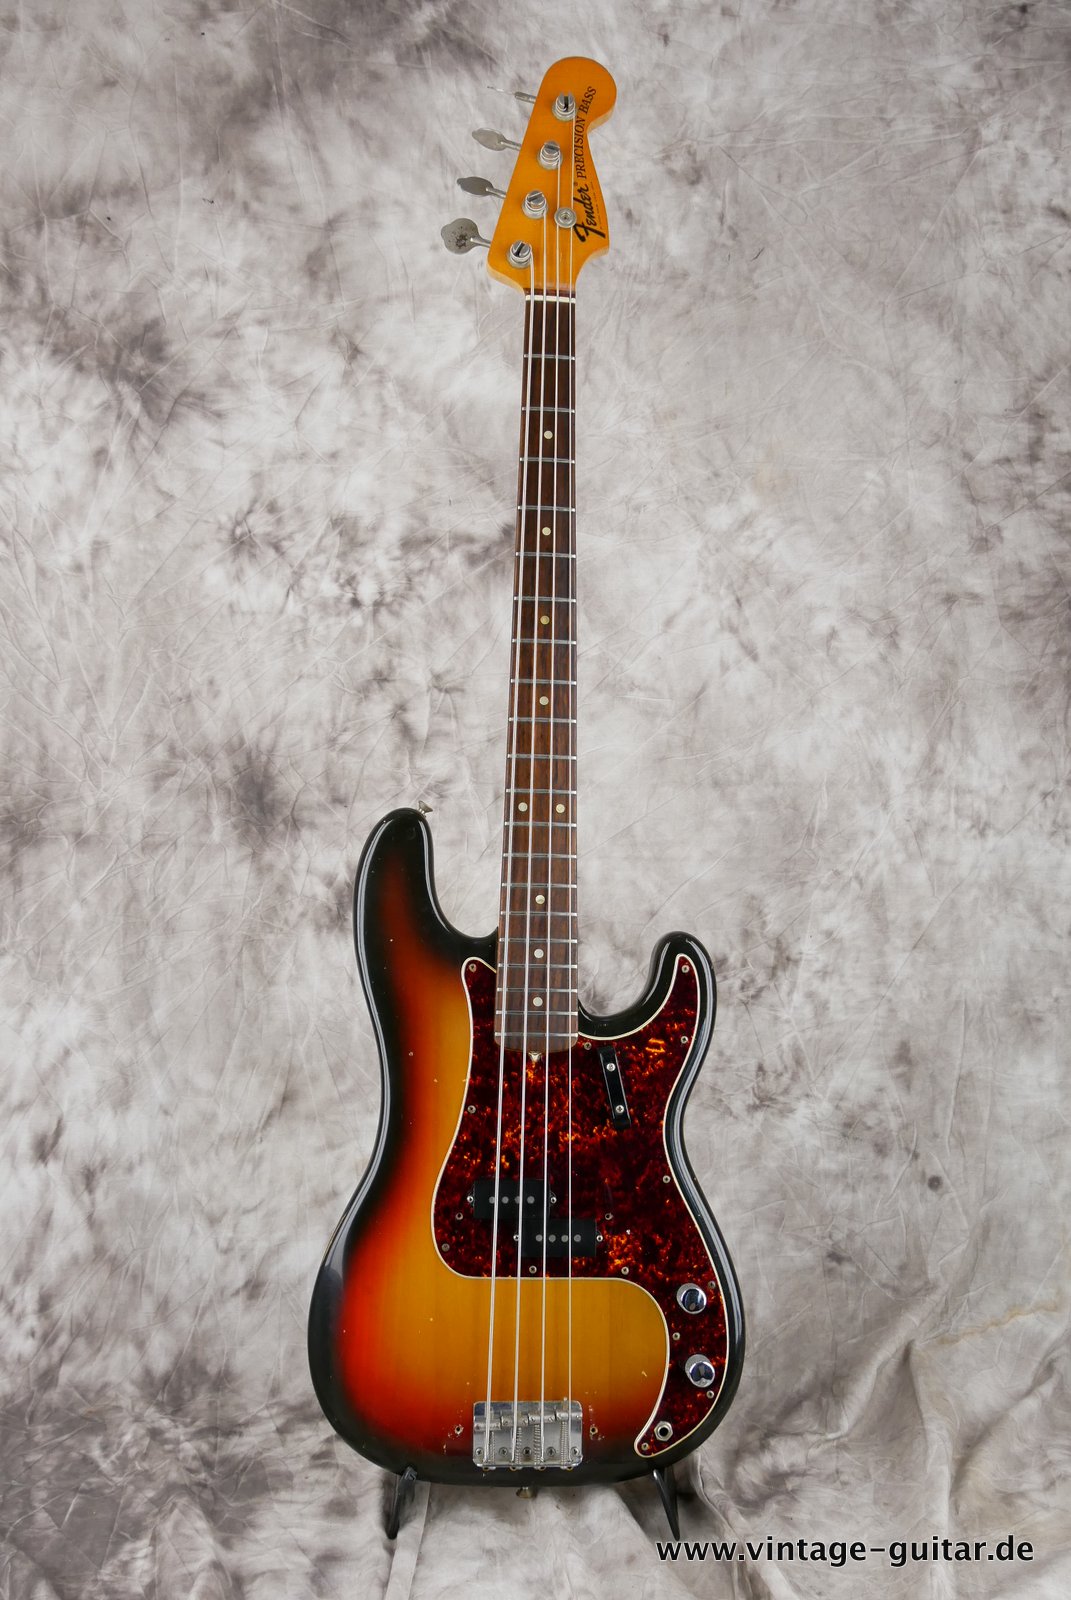 Fender-Precision-Bass-sunburst-1969-001.JPG